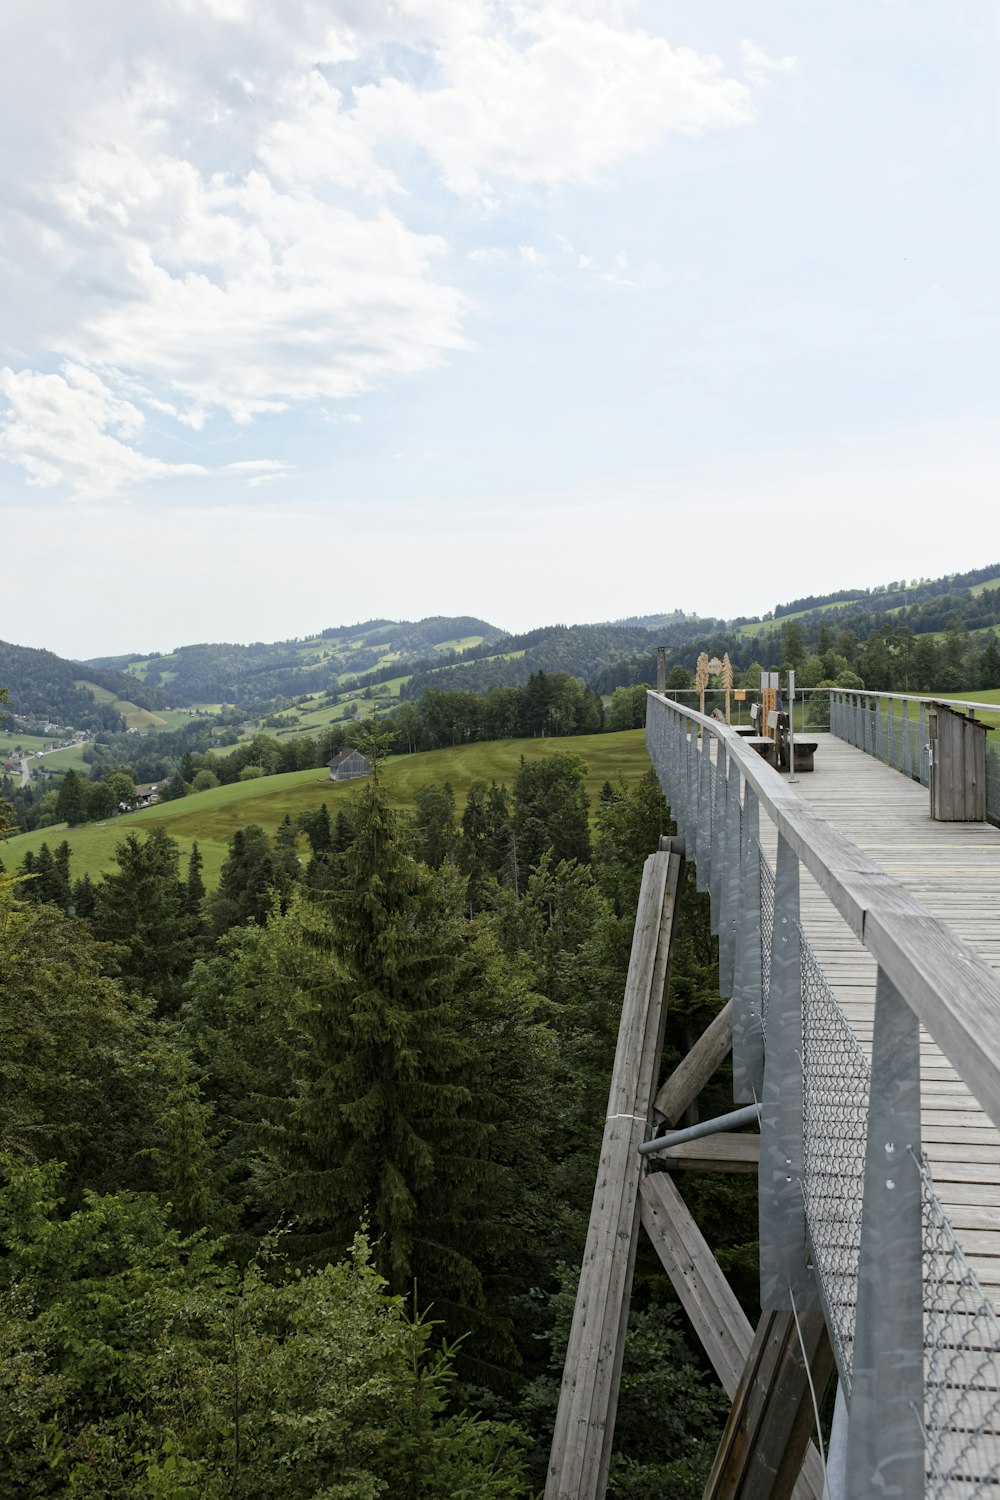 a wooden bridge over a lush green valley